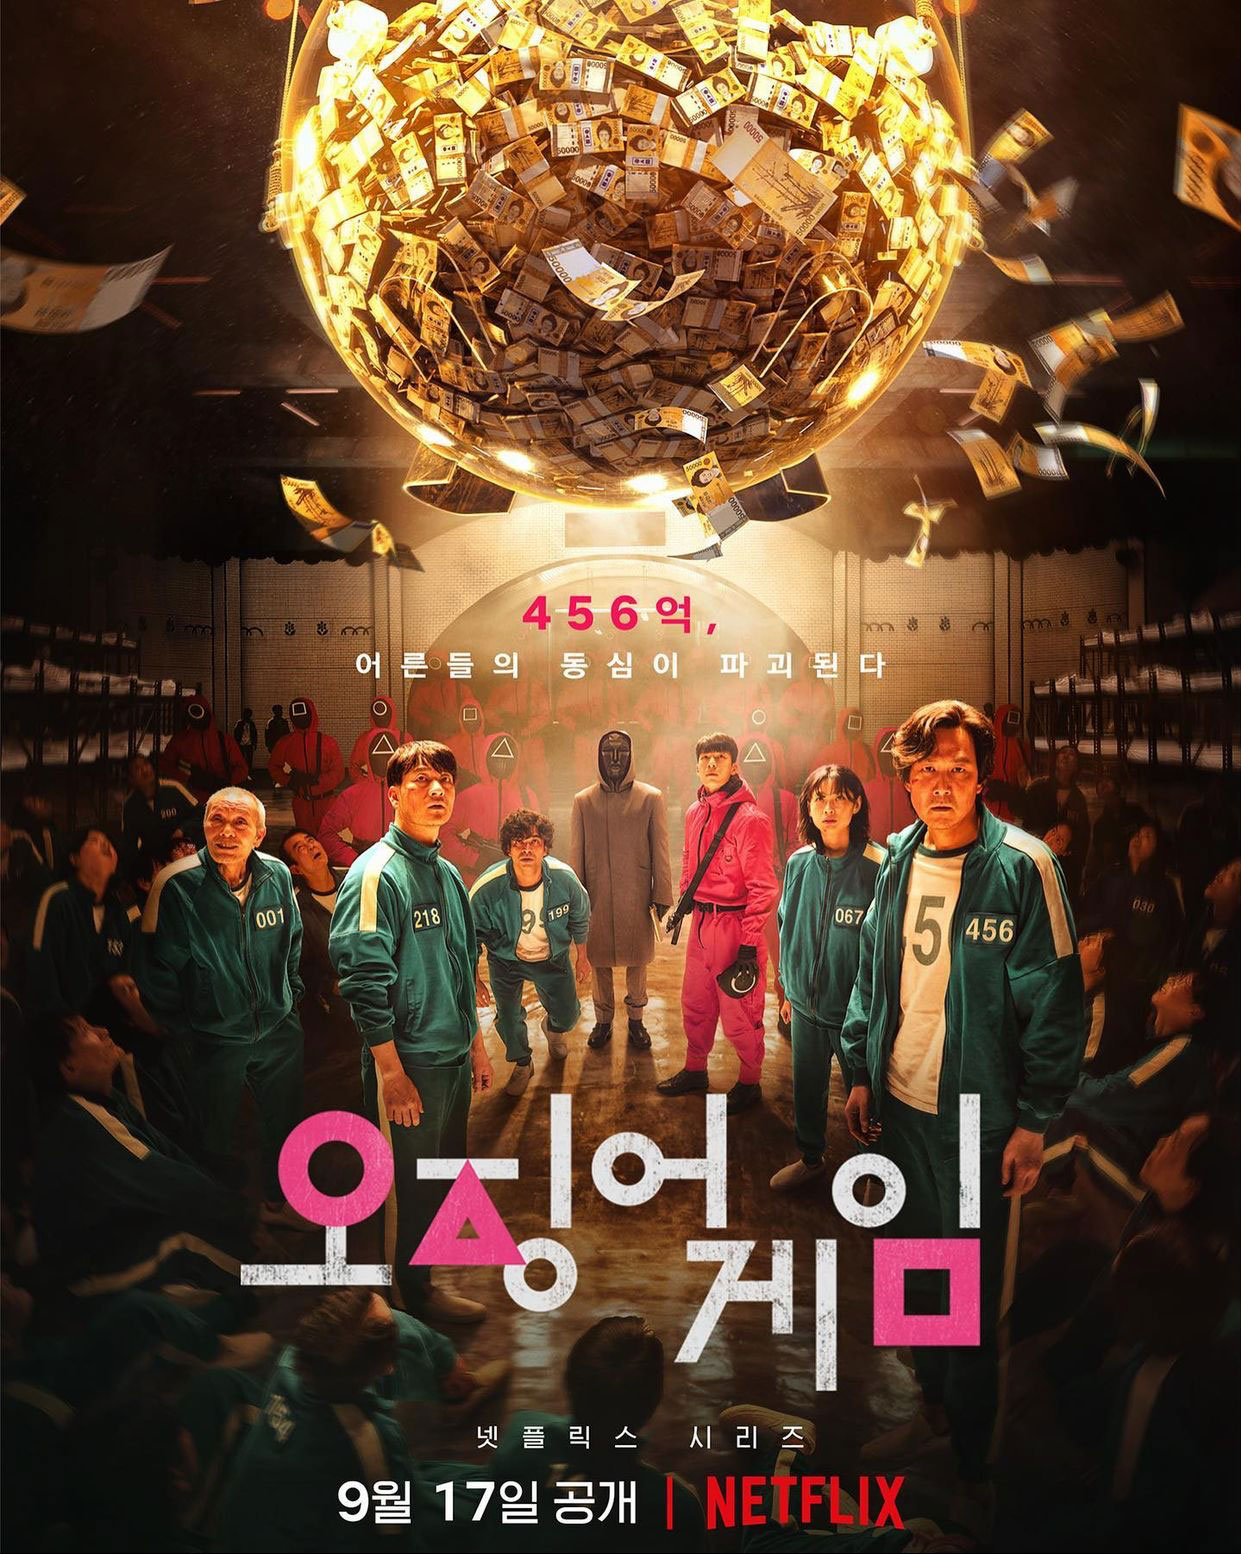 Phim cỗ Nước Hàn hoặc năm 2021: Trò đùa con cái mực - Squid Game